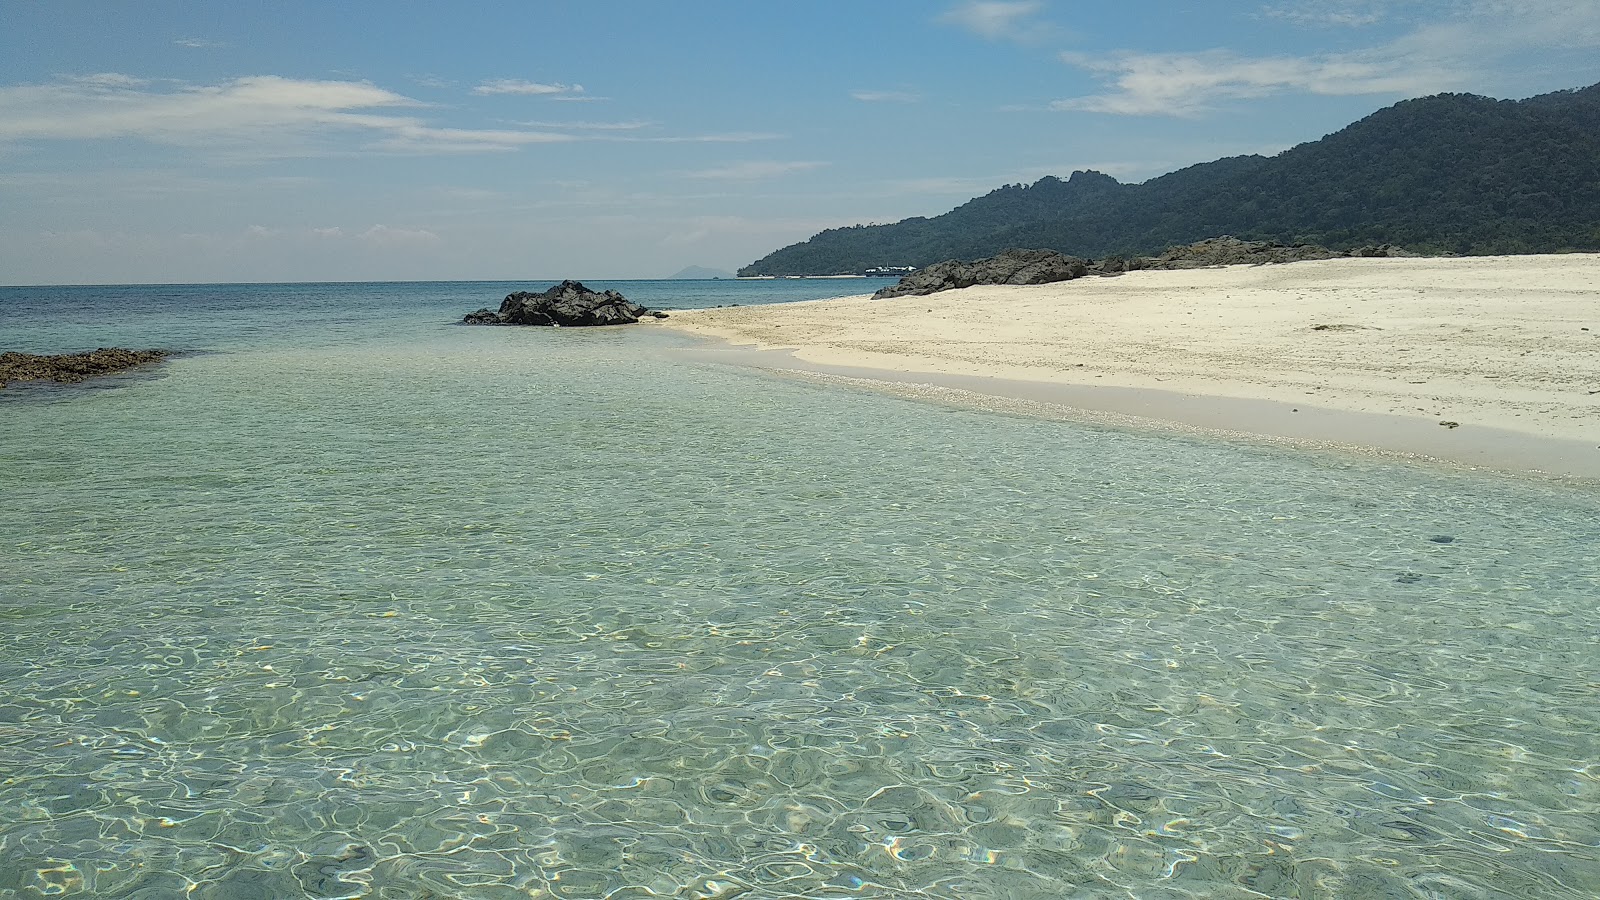 Pulau Mentigi'in fotoğrafı turkuaz saf su yüzey ile